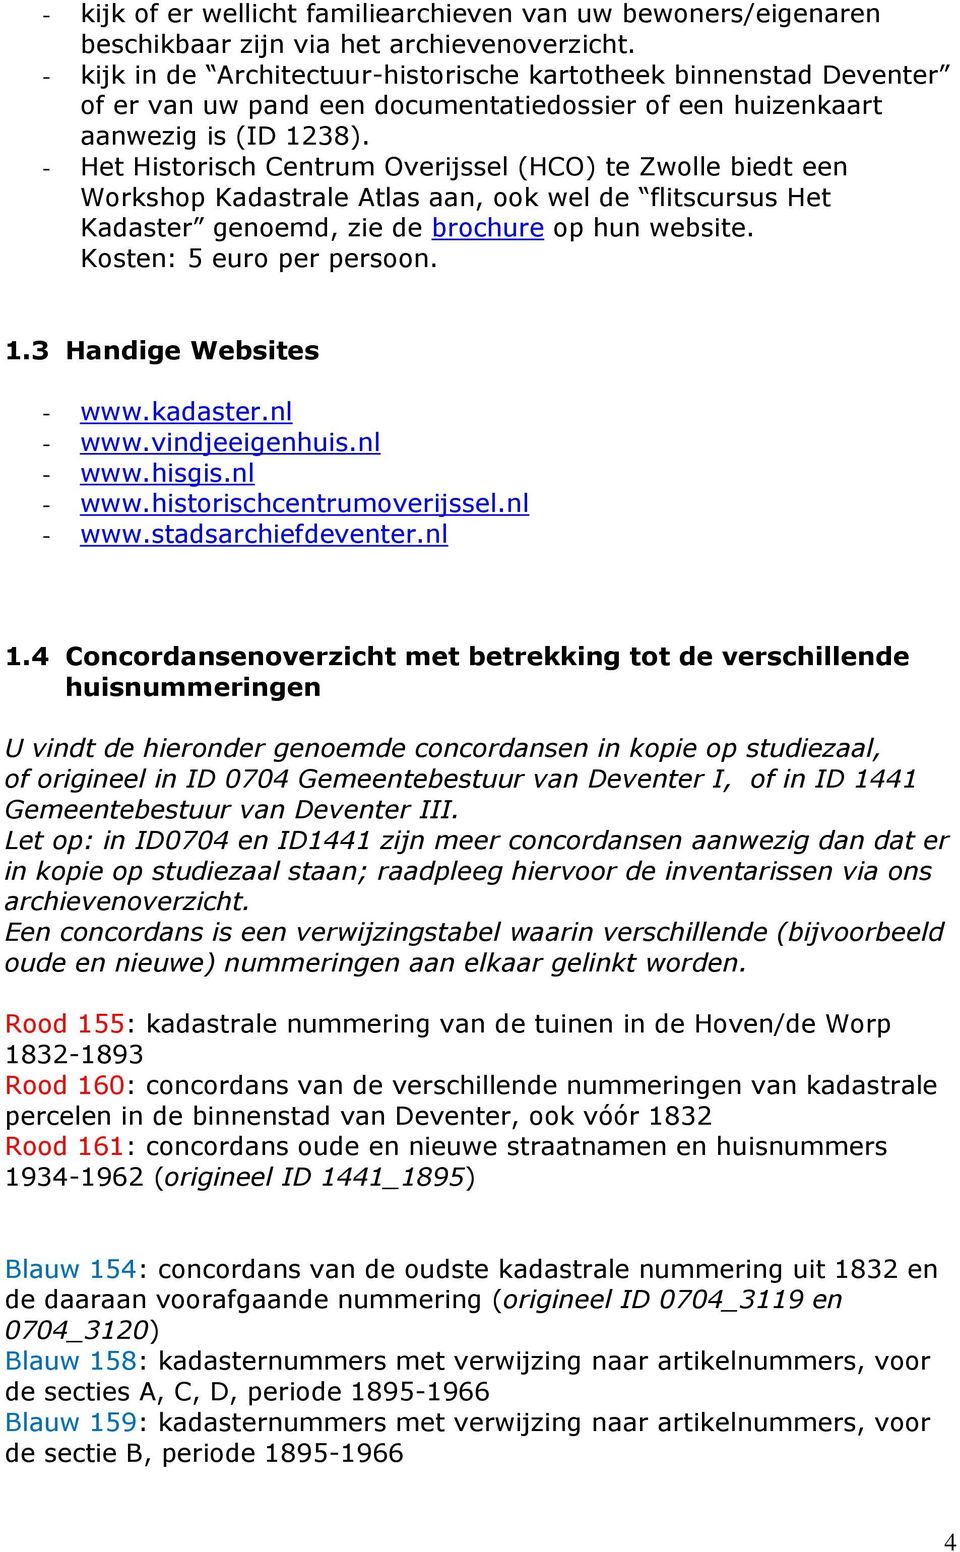 - Het Historisch Centrum Overijssel (HCO) te Zwolle biedt een Workshop Kadastrale Atlas aan, ook wel de flitscursus Het Kadaster genoemd, zie de brochure op hun website. Kosten: 5 euro per persoon. 1.